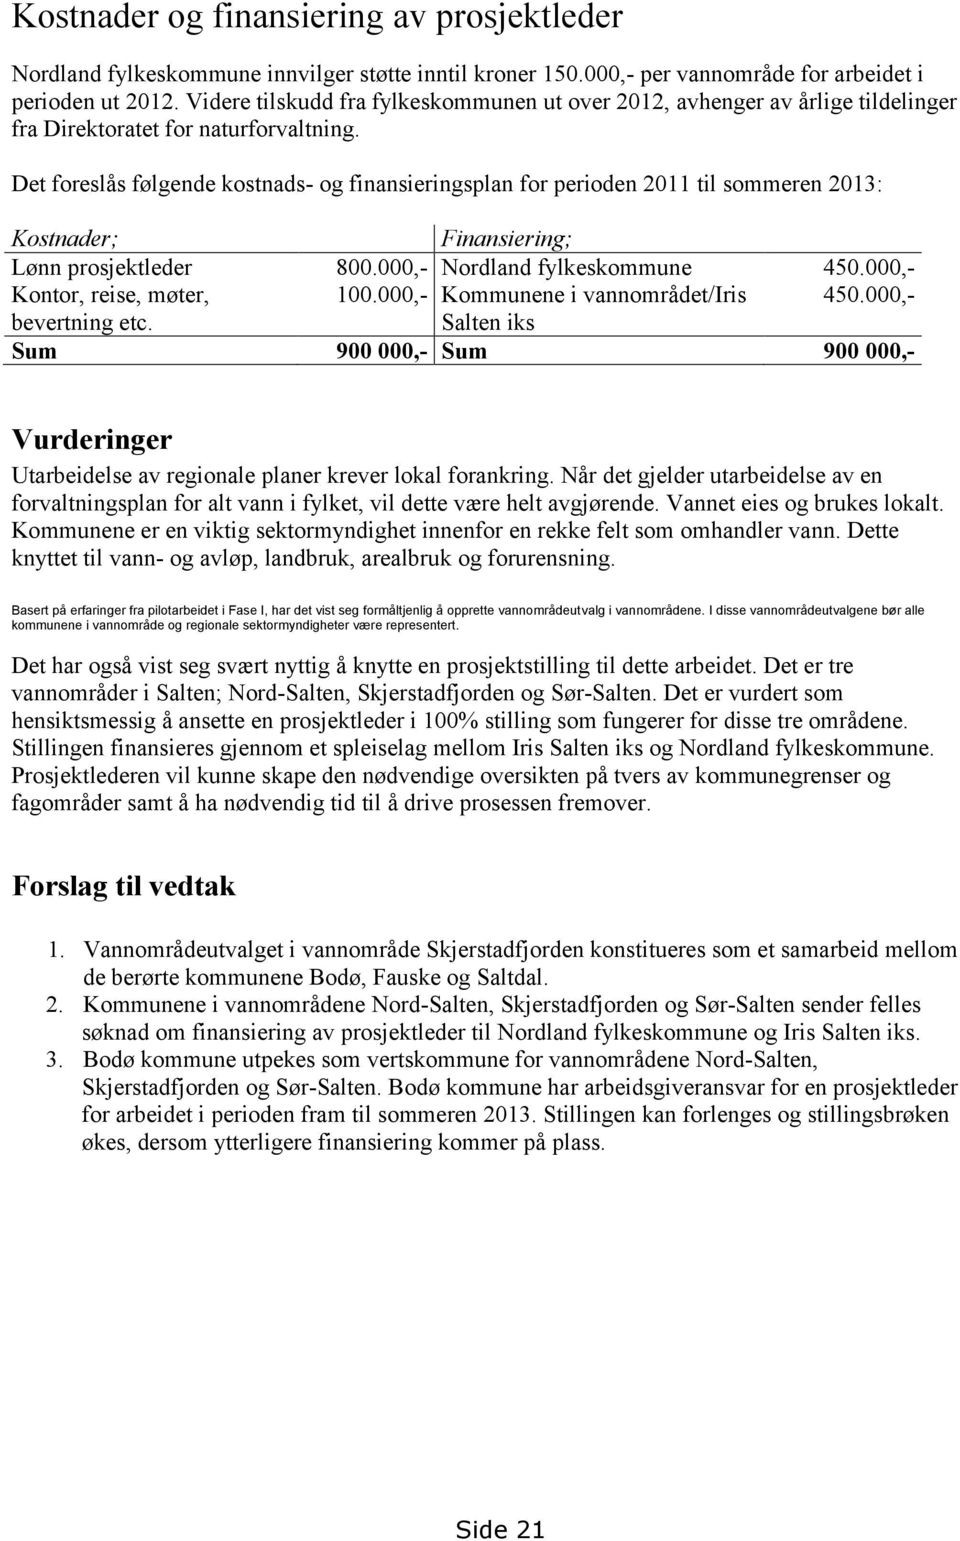 Det foreslås følgende kostnads- og finansieringsplan for perioden 2011 til sommeren 2013: Kostnader; Finansiering; Lønn prosjektleder 800.000,- Nordland fylkeskommune 450.